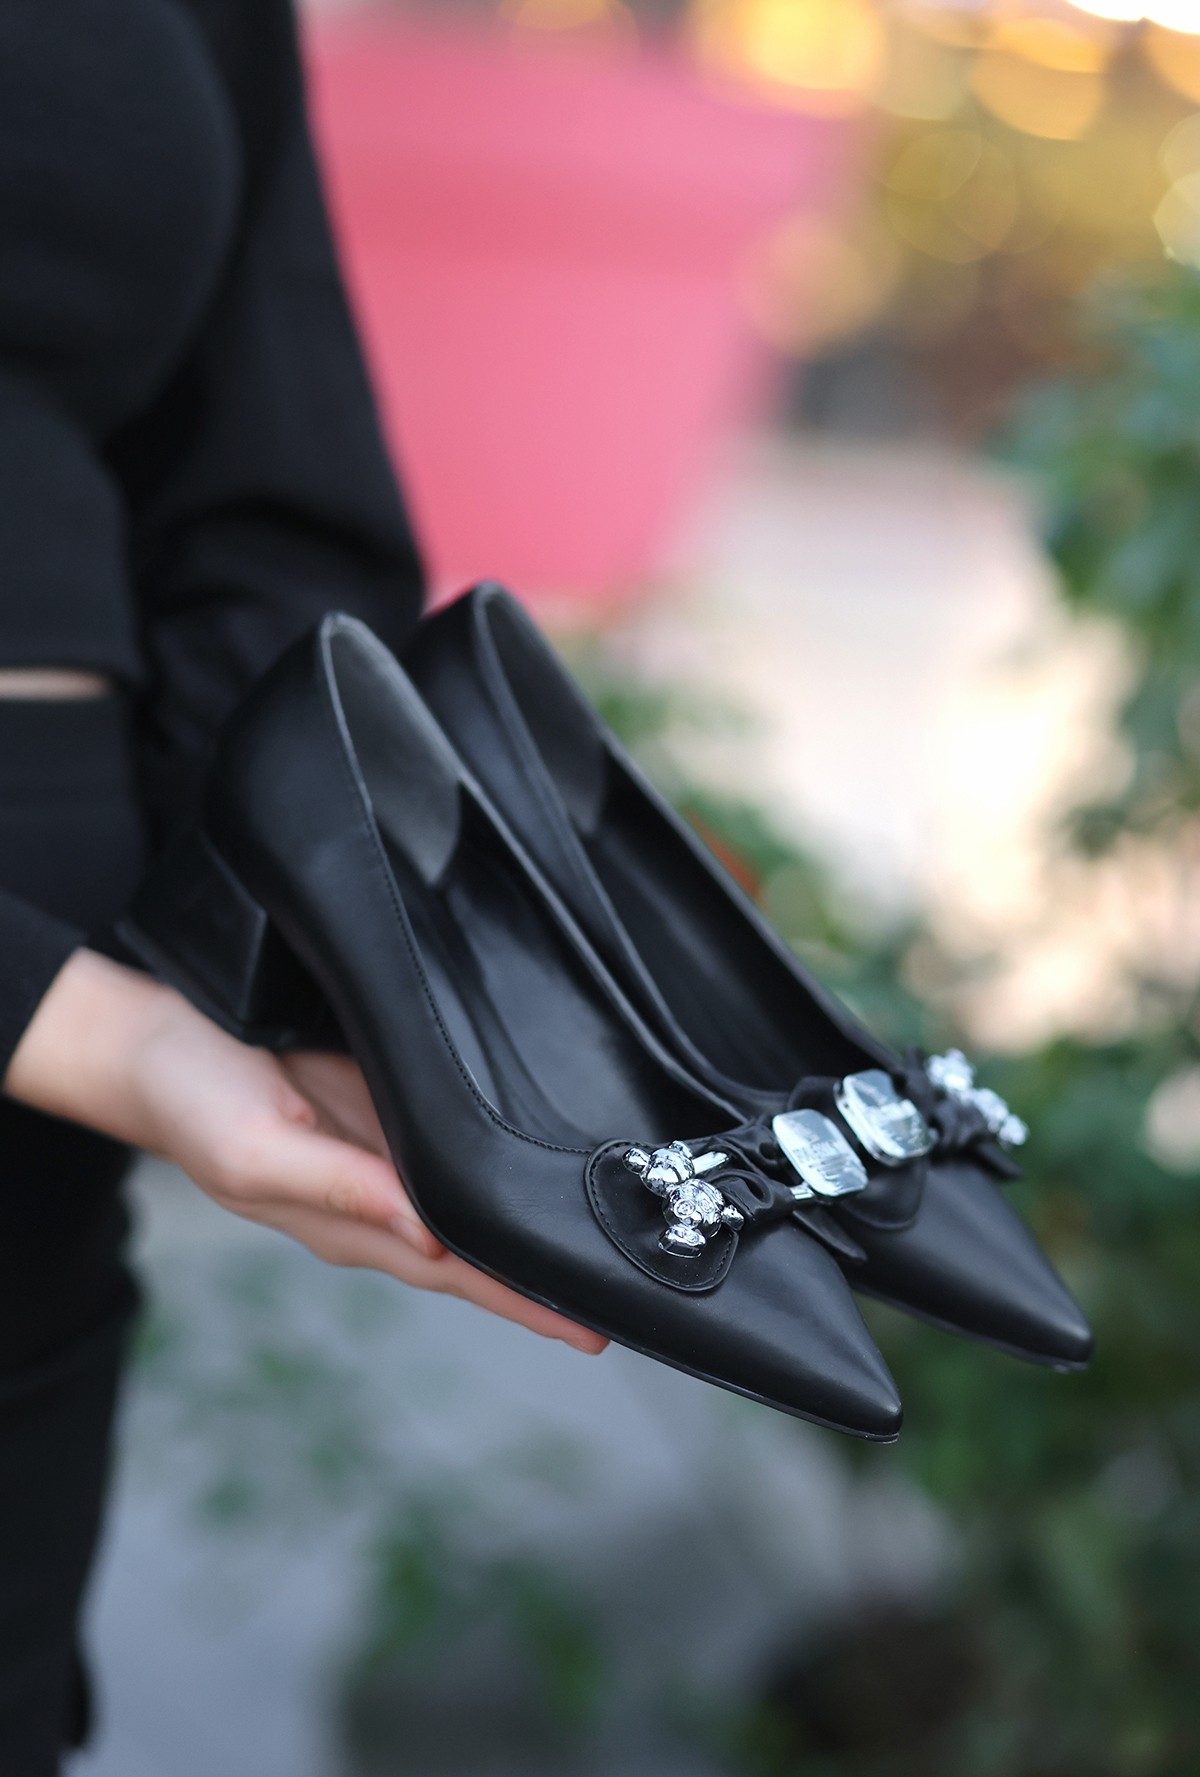 CLZ943 Siyah Cilt  Platin Tokalı Topuklu Ayakkabı